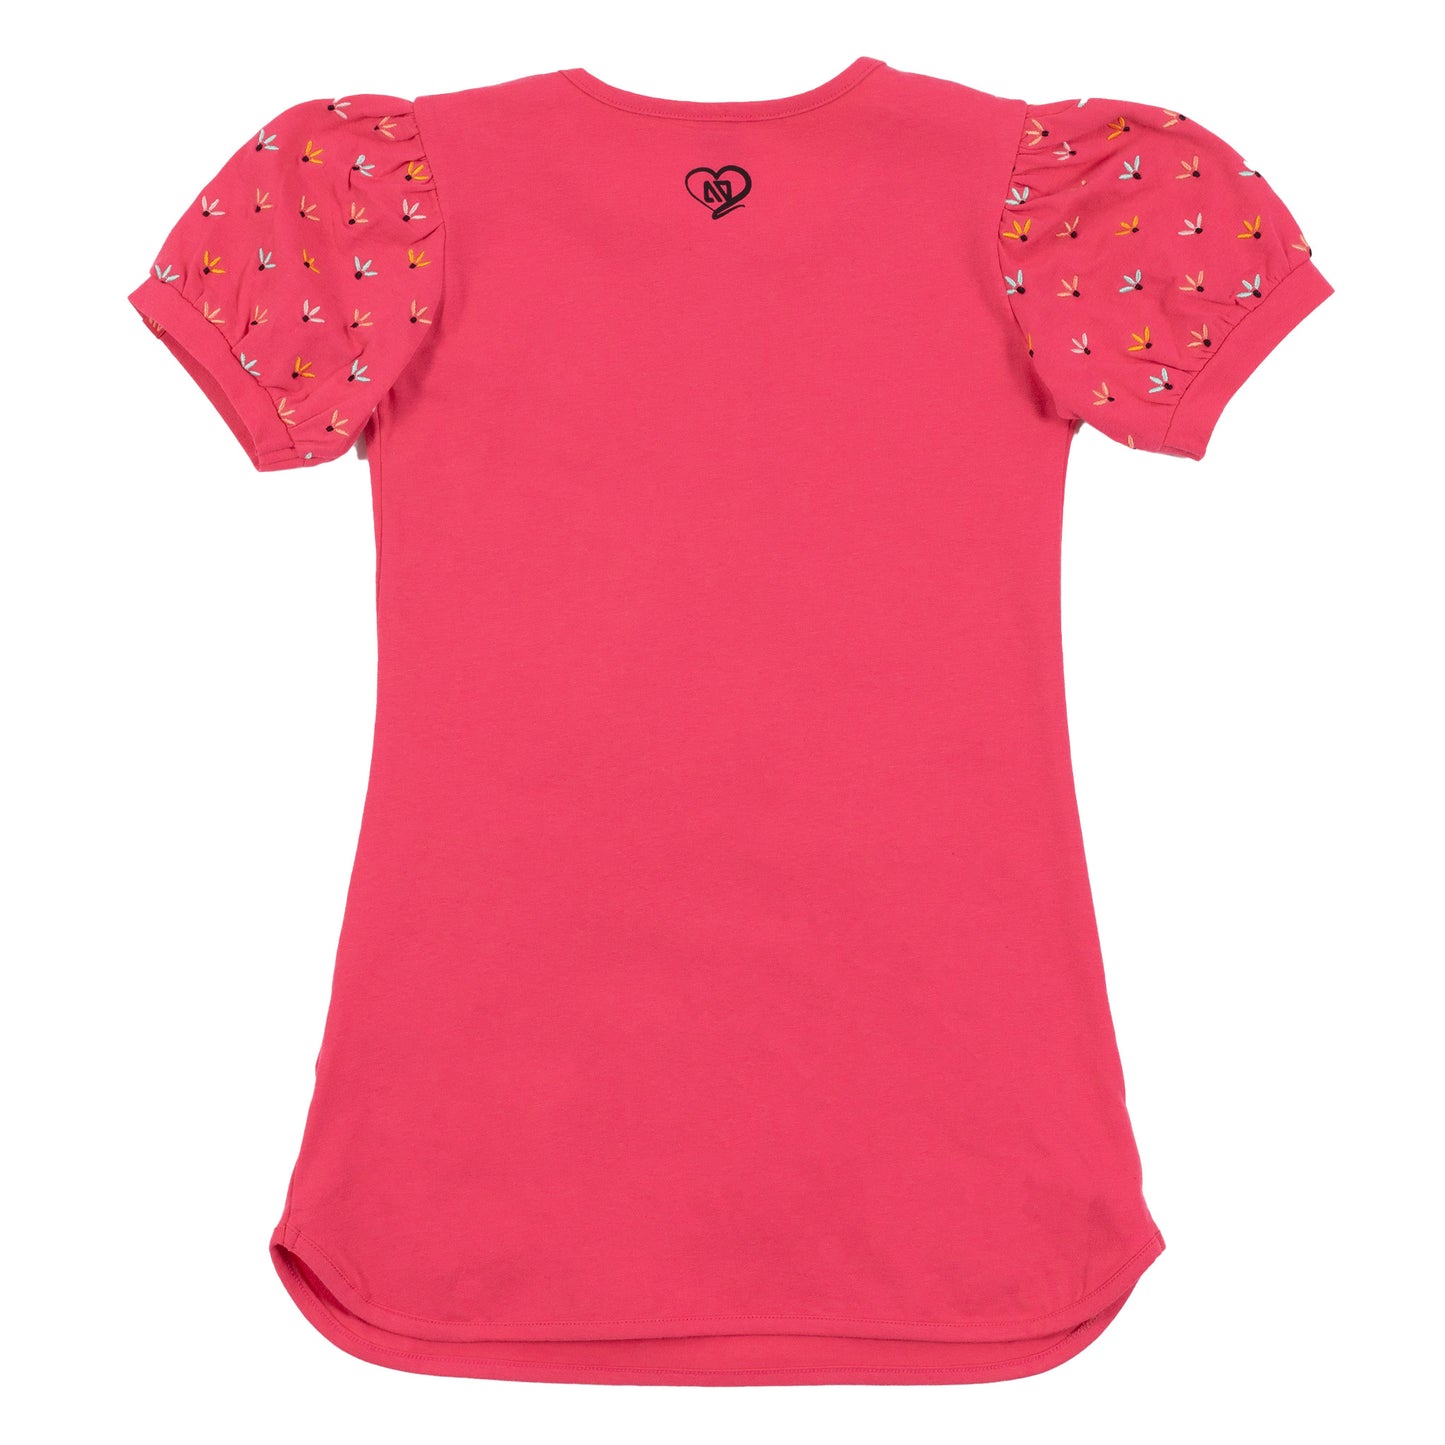 Tunique en jersey avec poches fraise - Pique-nique au soleil - S2404-06 - 2 à 10 ans